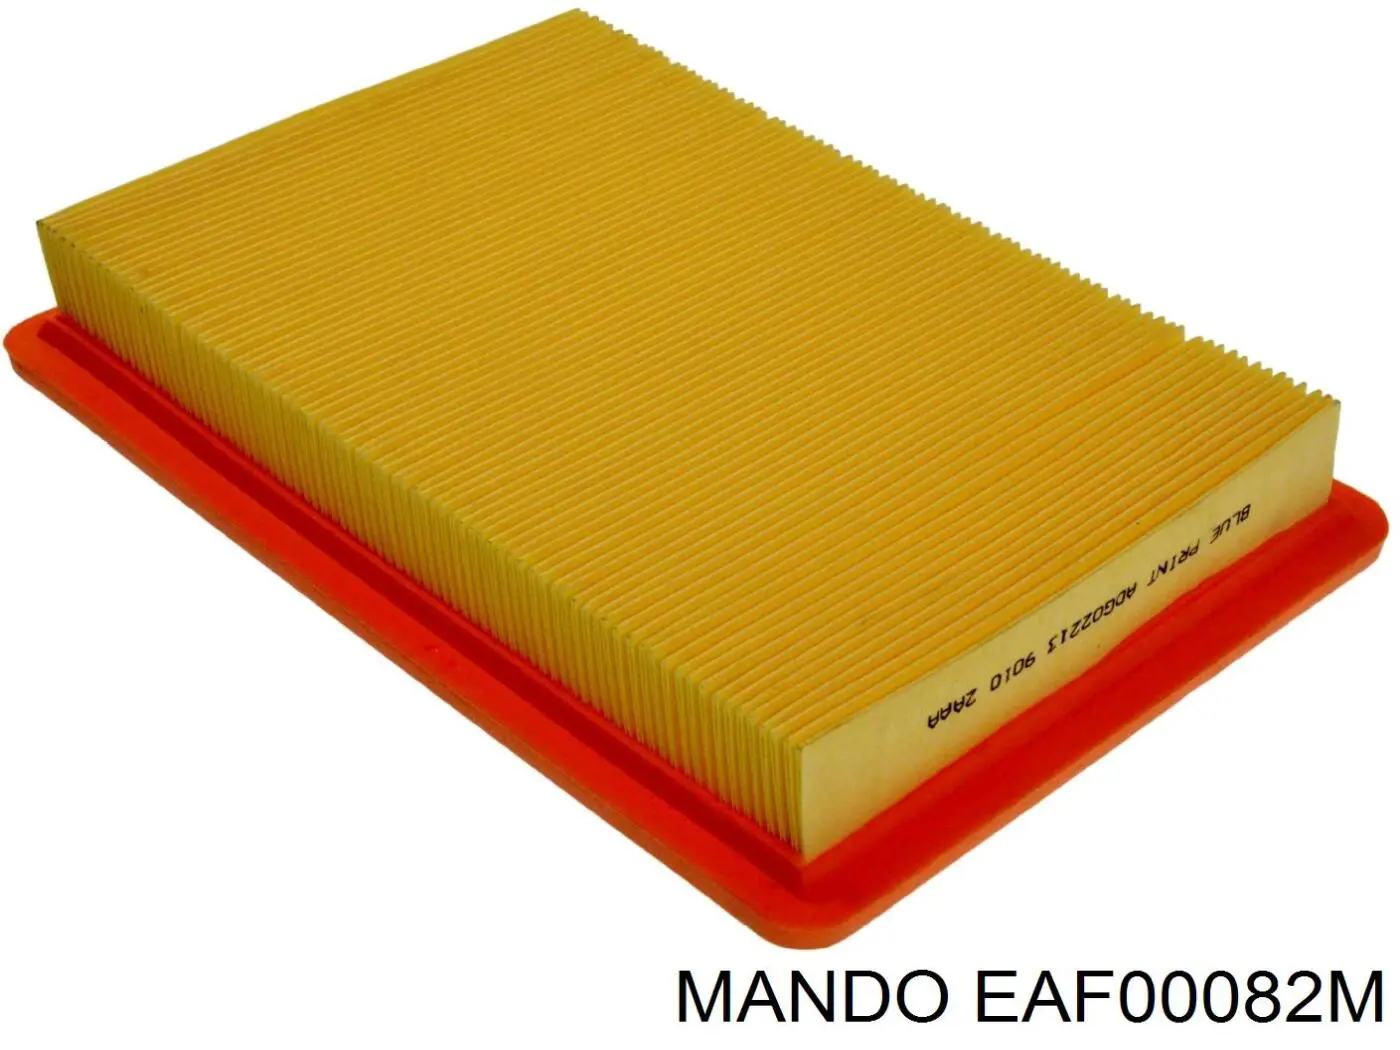 EAF00082M Mando фільтр повітряний